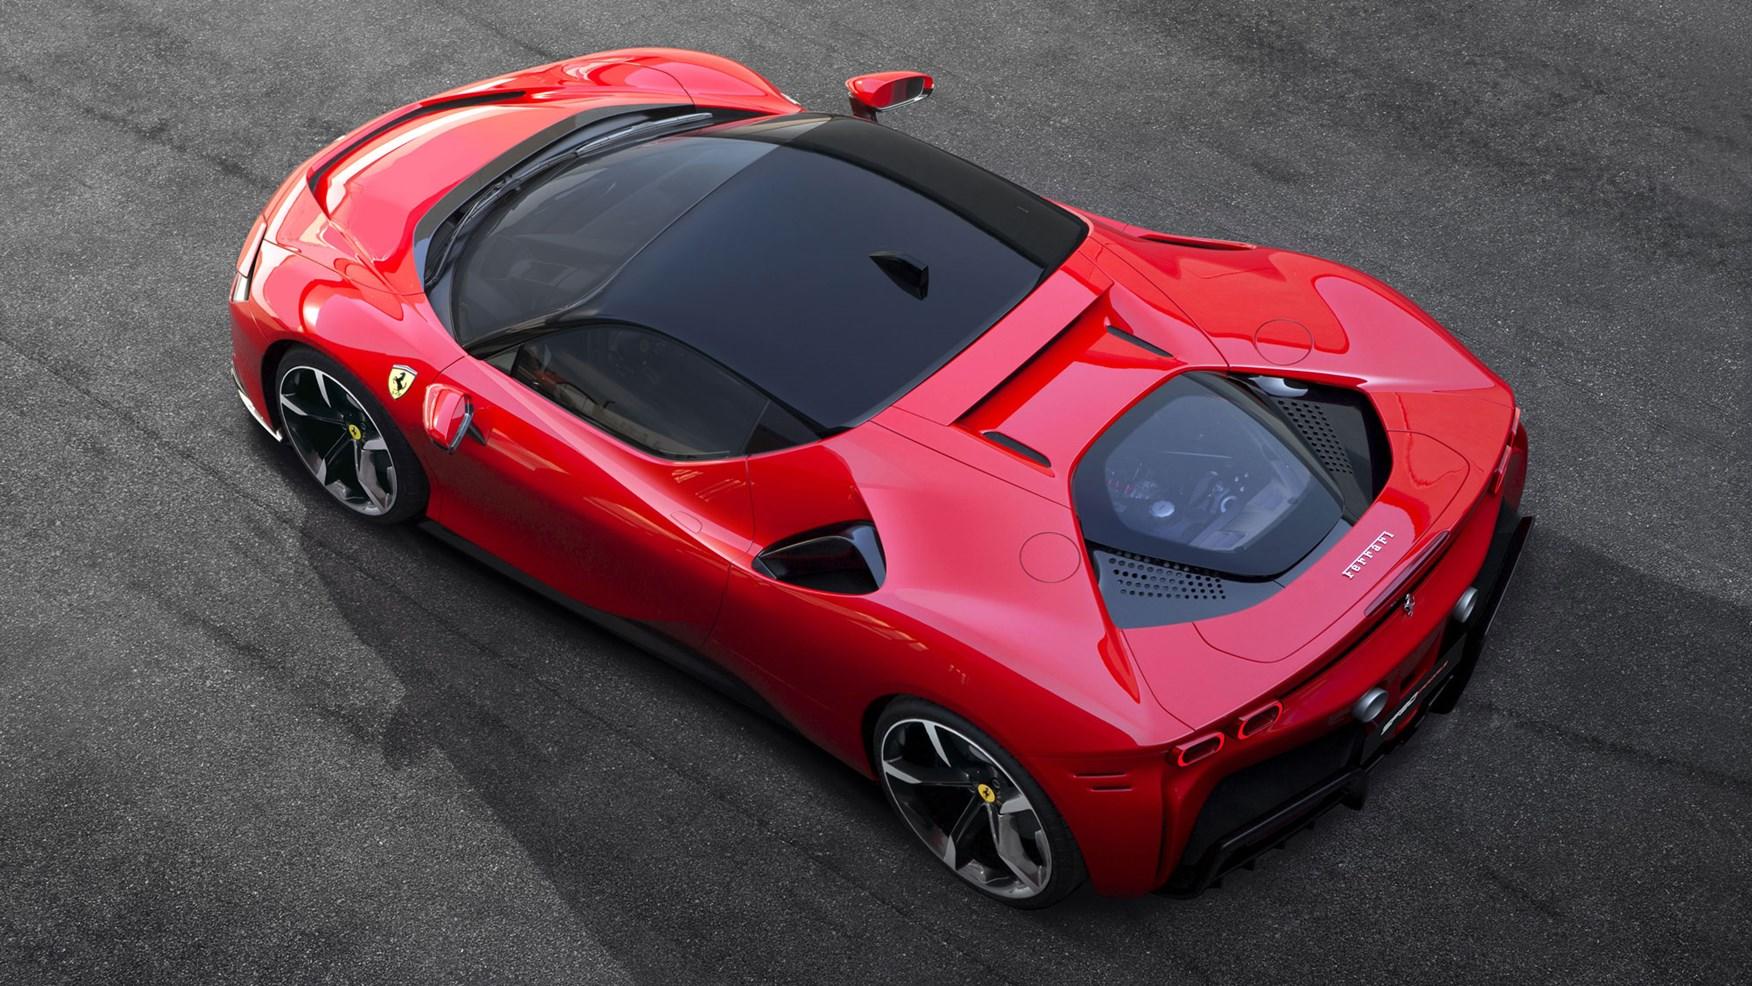 Zrychlení z 0 na 100 Ferrari SF90 Stradale zvládne za 2,5 sekundy